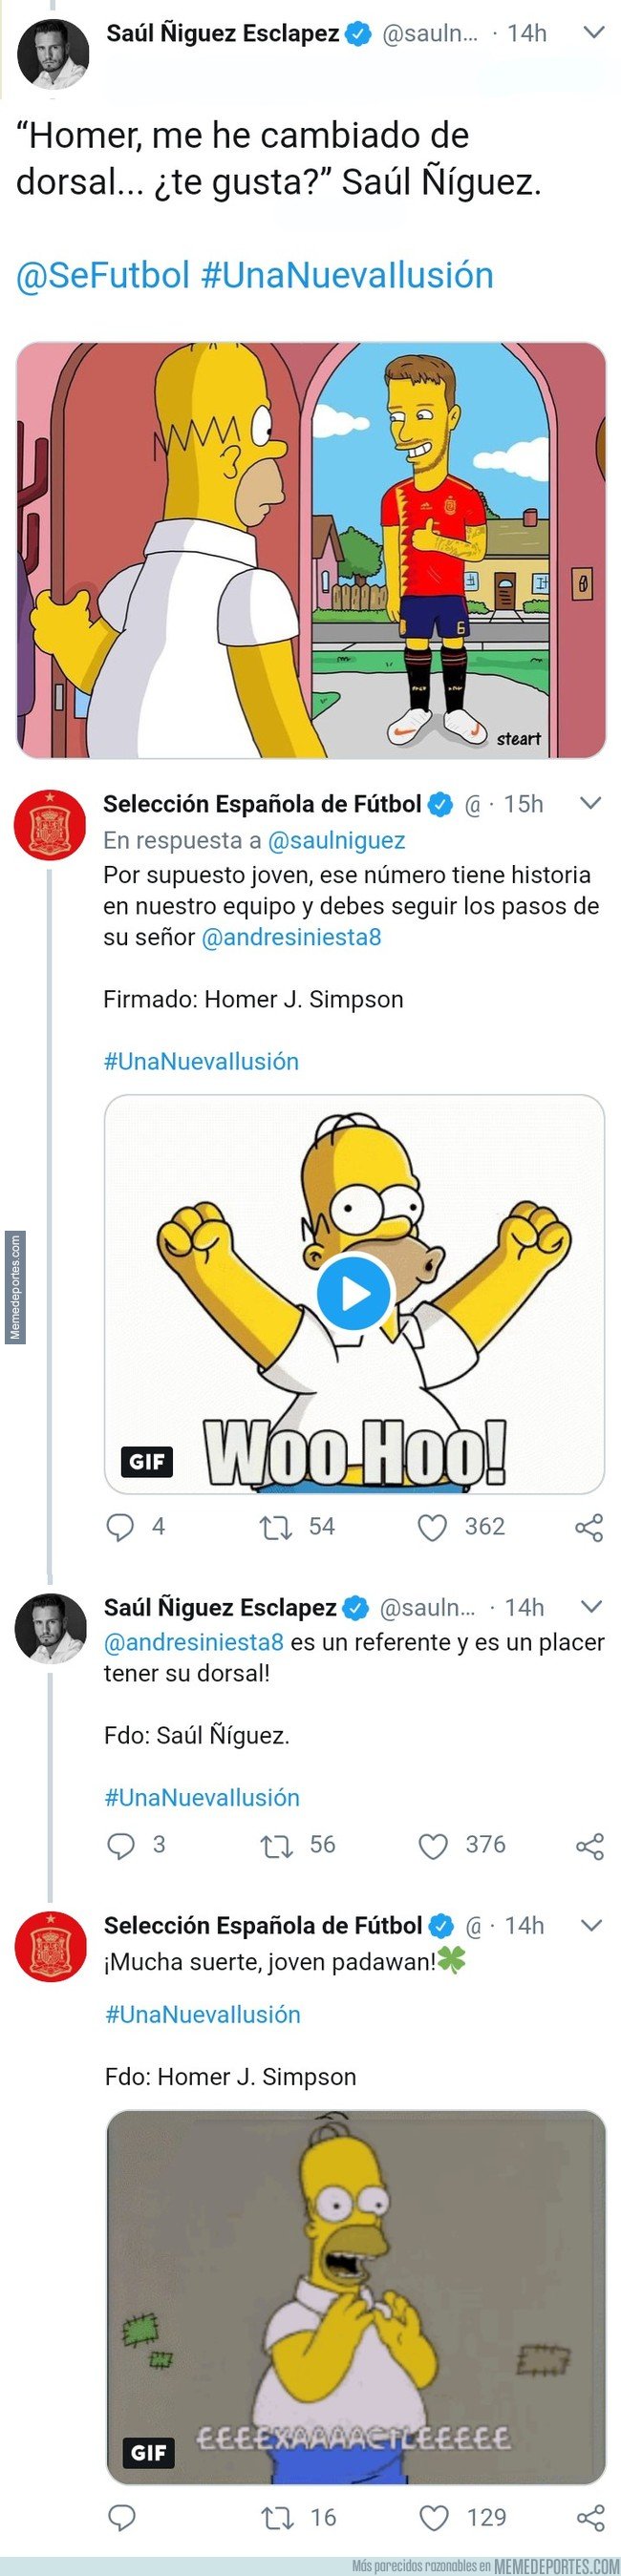 1052884 - La surrealista conversación entre Saúl Ñíguez y Homer Simpson en Twitter